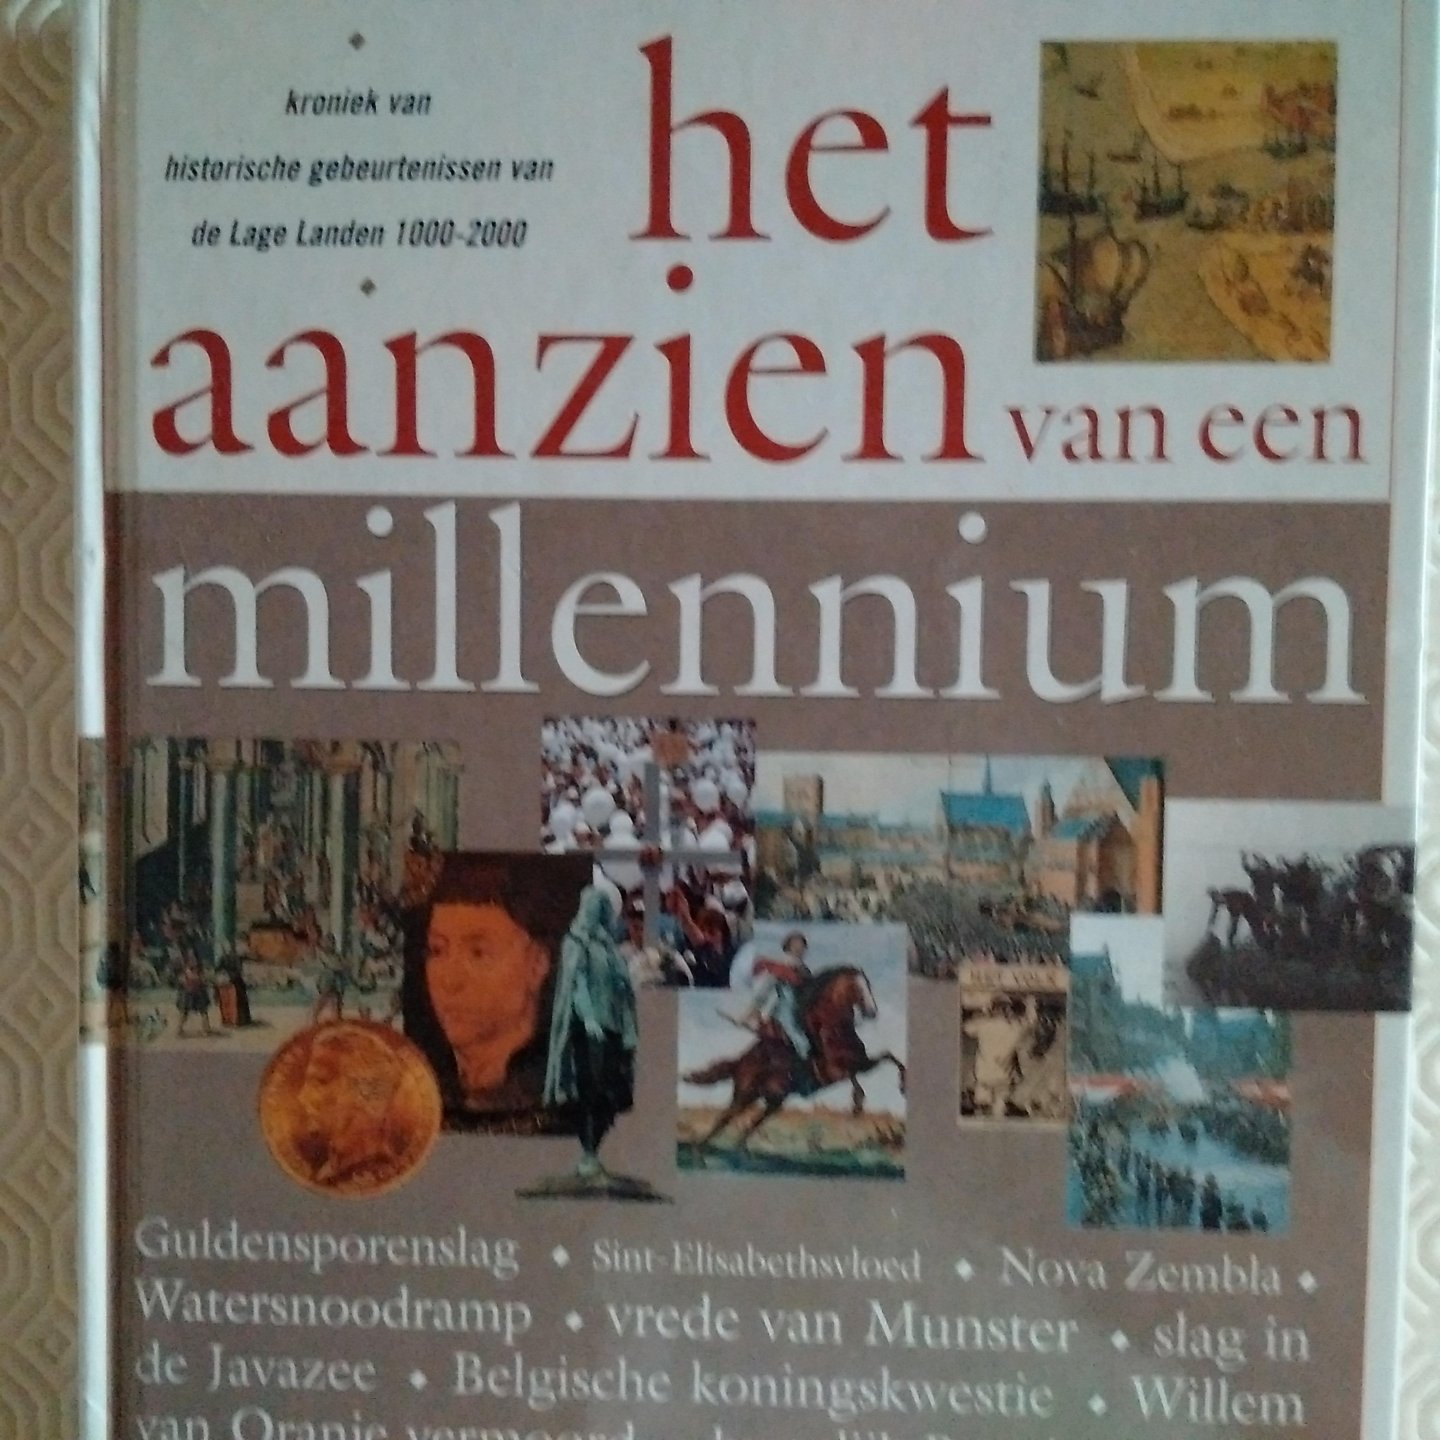 Velema, Willem samensteller - Het aanzien van een millennium. Kroniek van historische gebeurtenissen van de Lage Landen 1000-2000